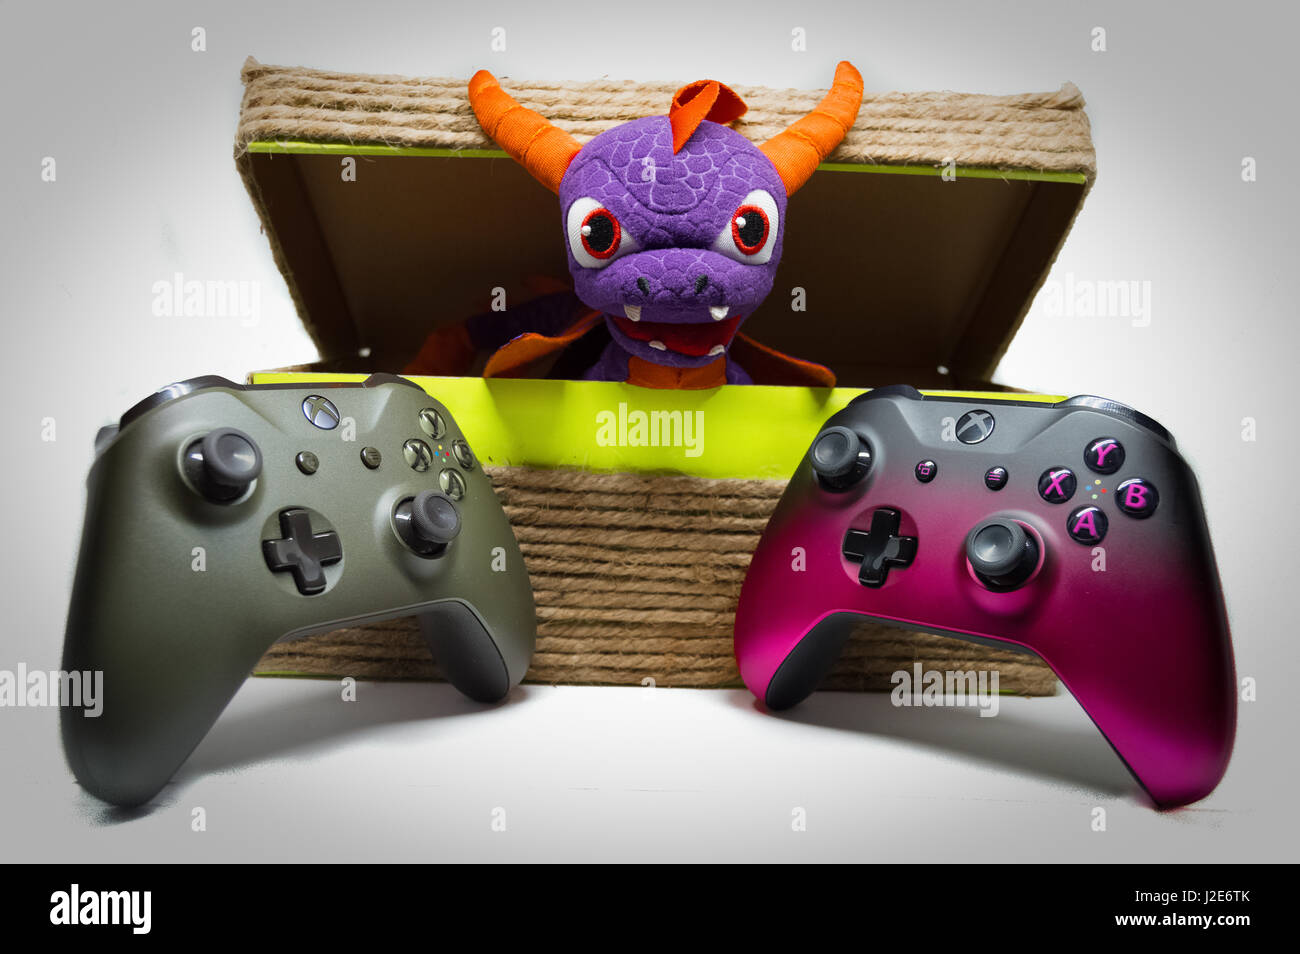 Mira quién quiere jugar Microsoft XBOX ! Esta es una imagen de XBOX controladores con un dragón toy dentro de una canasta de self-made. Foto de stock